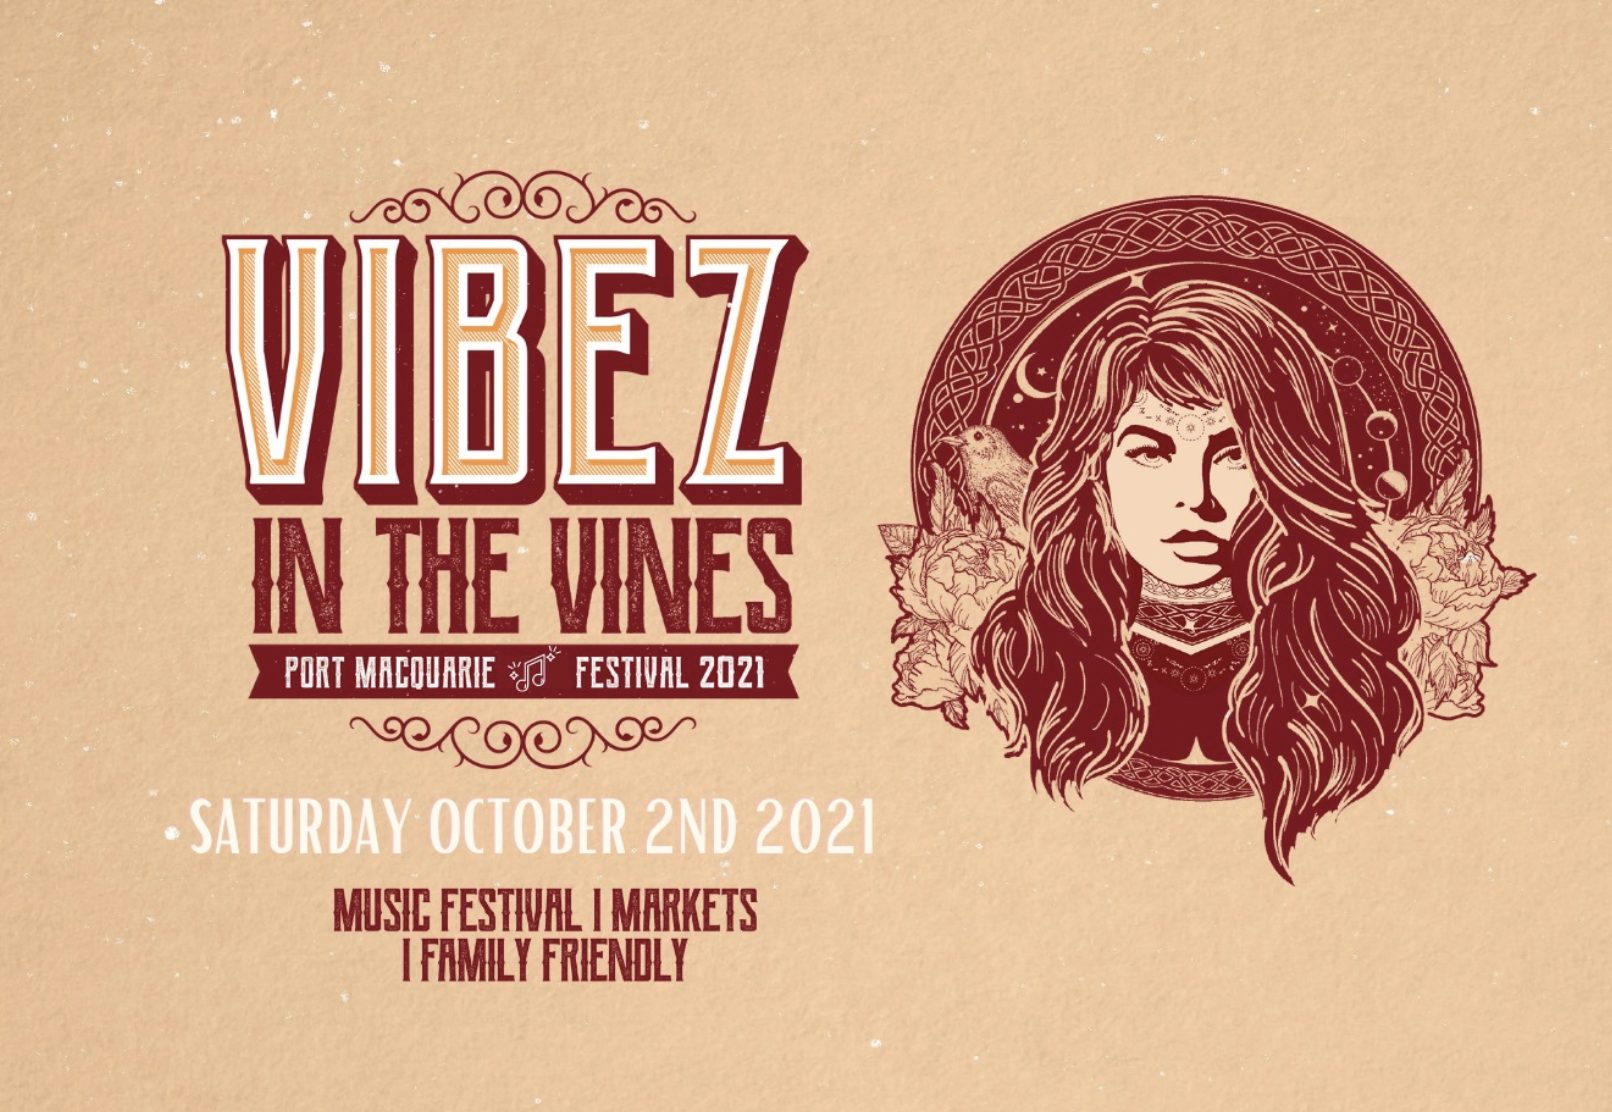 Vibez in the Vinez Music Festival